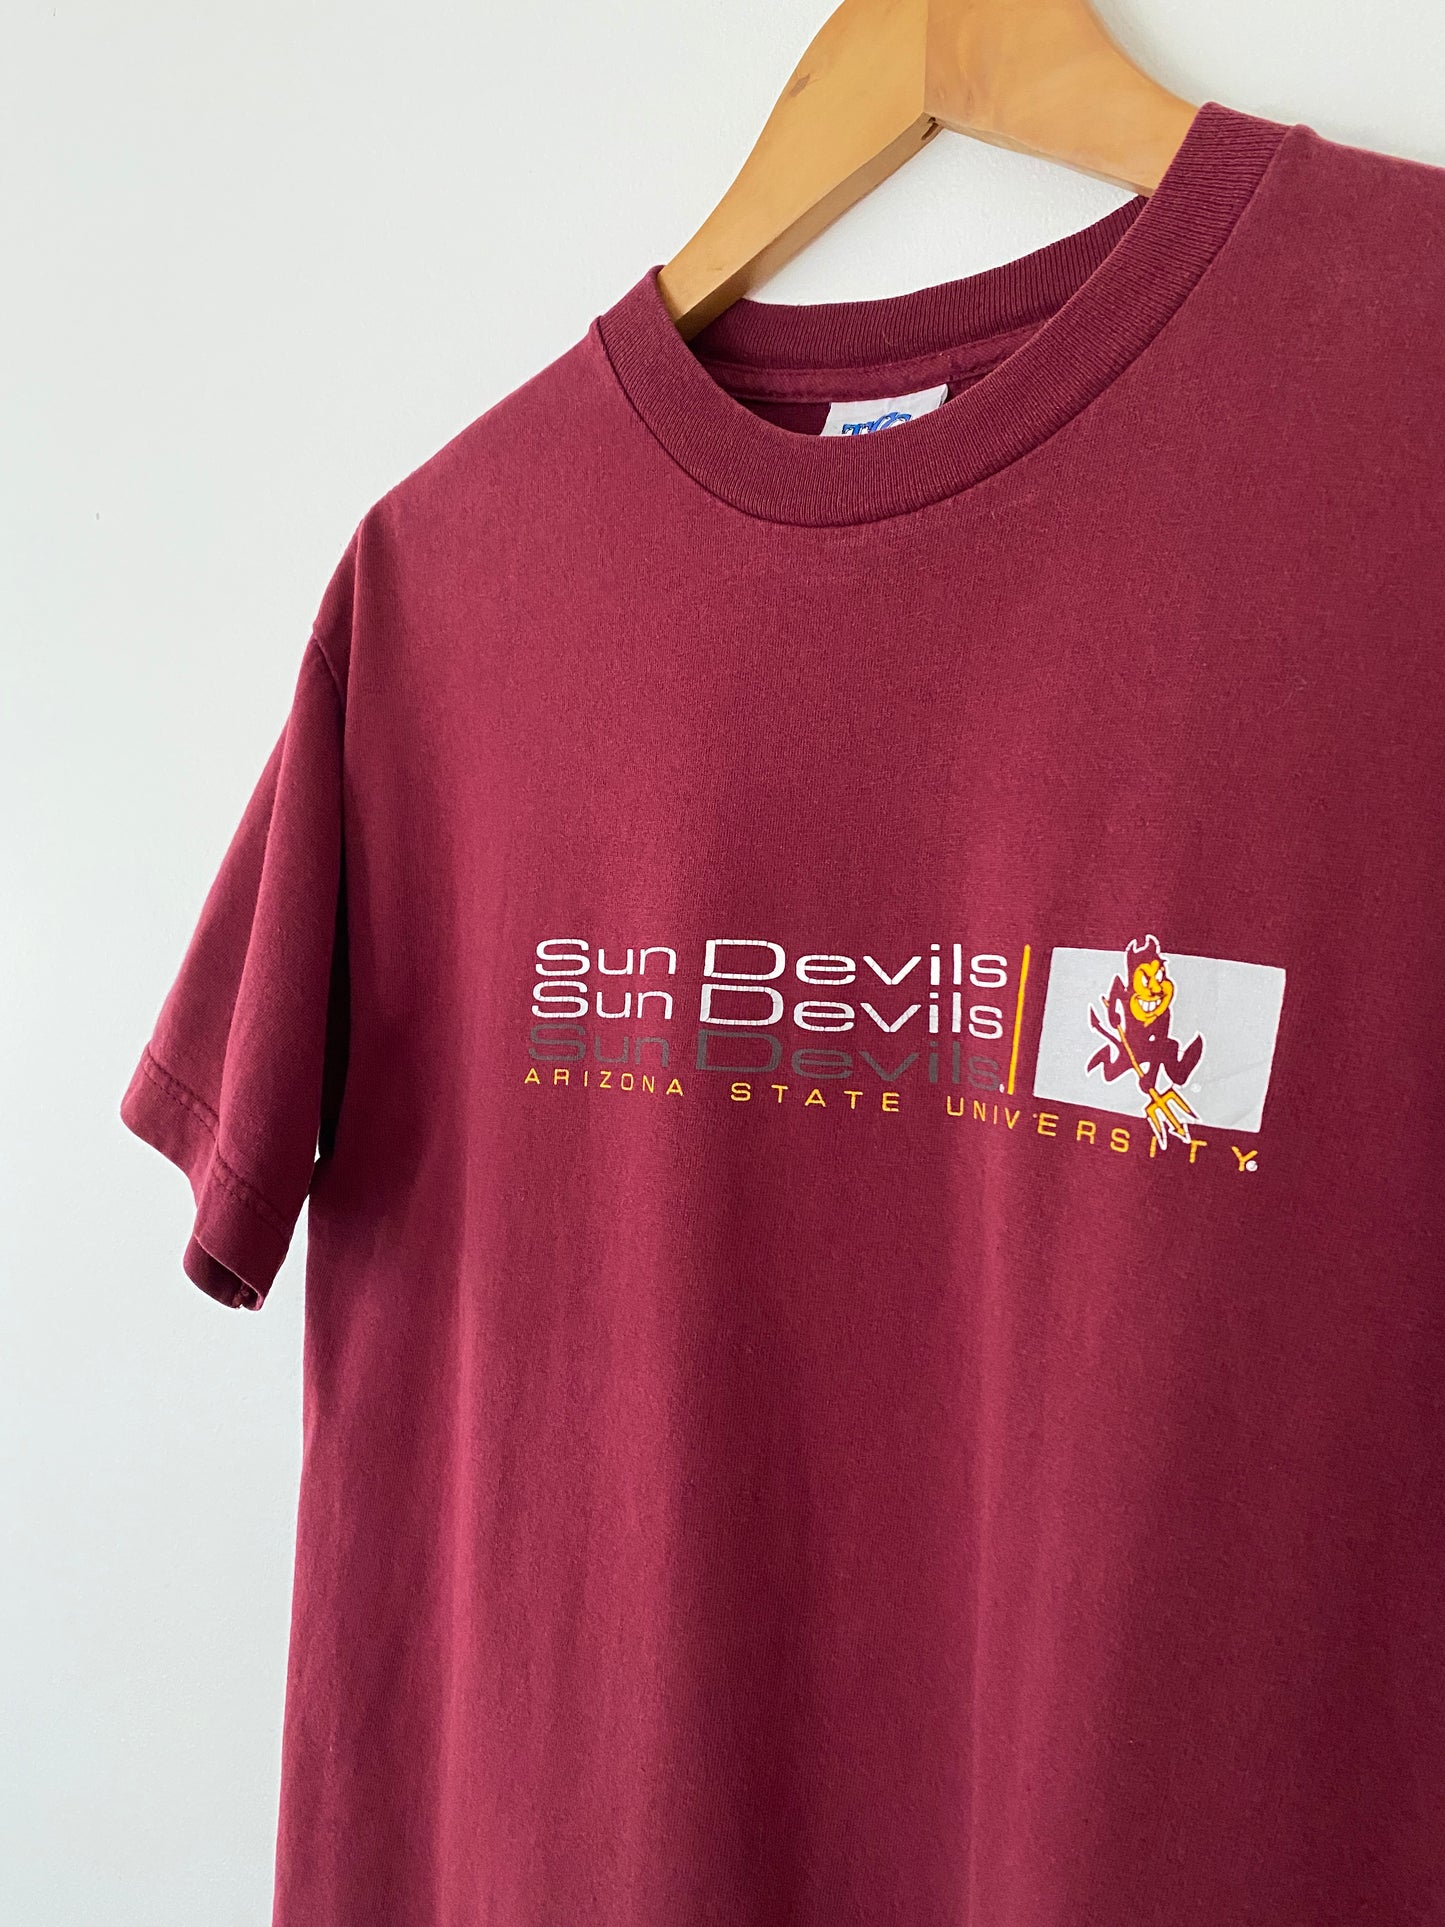 ASU Sun Devils Basketball T-Shirt - M